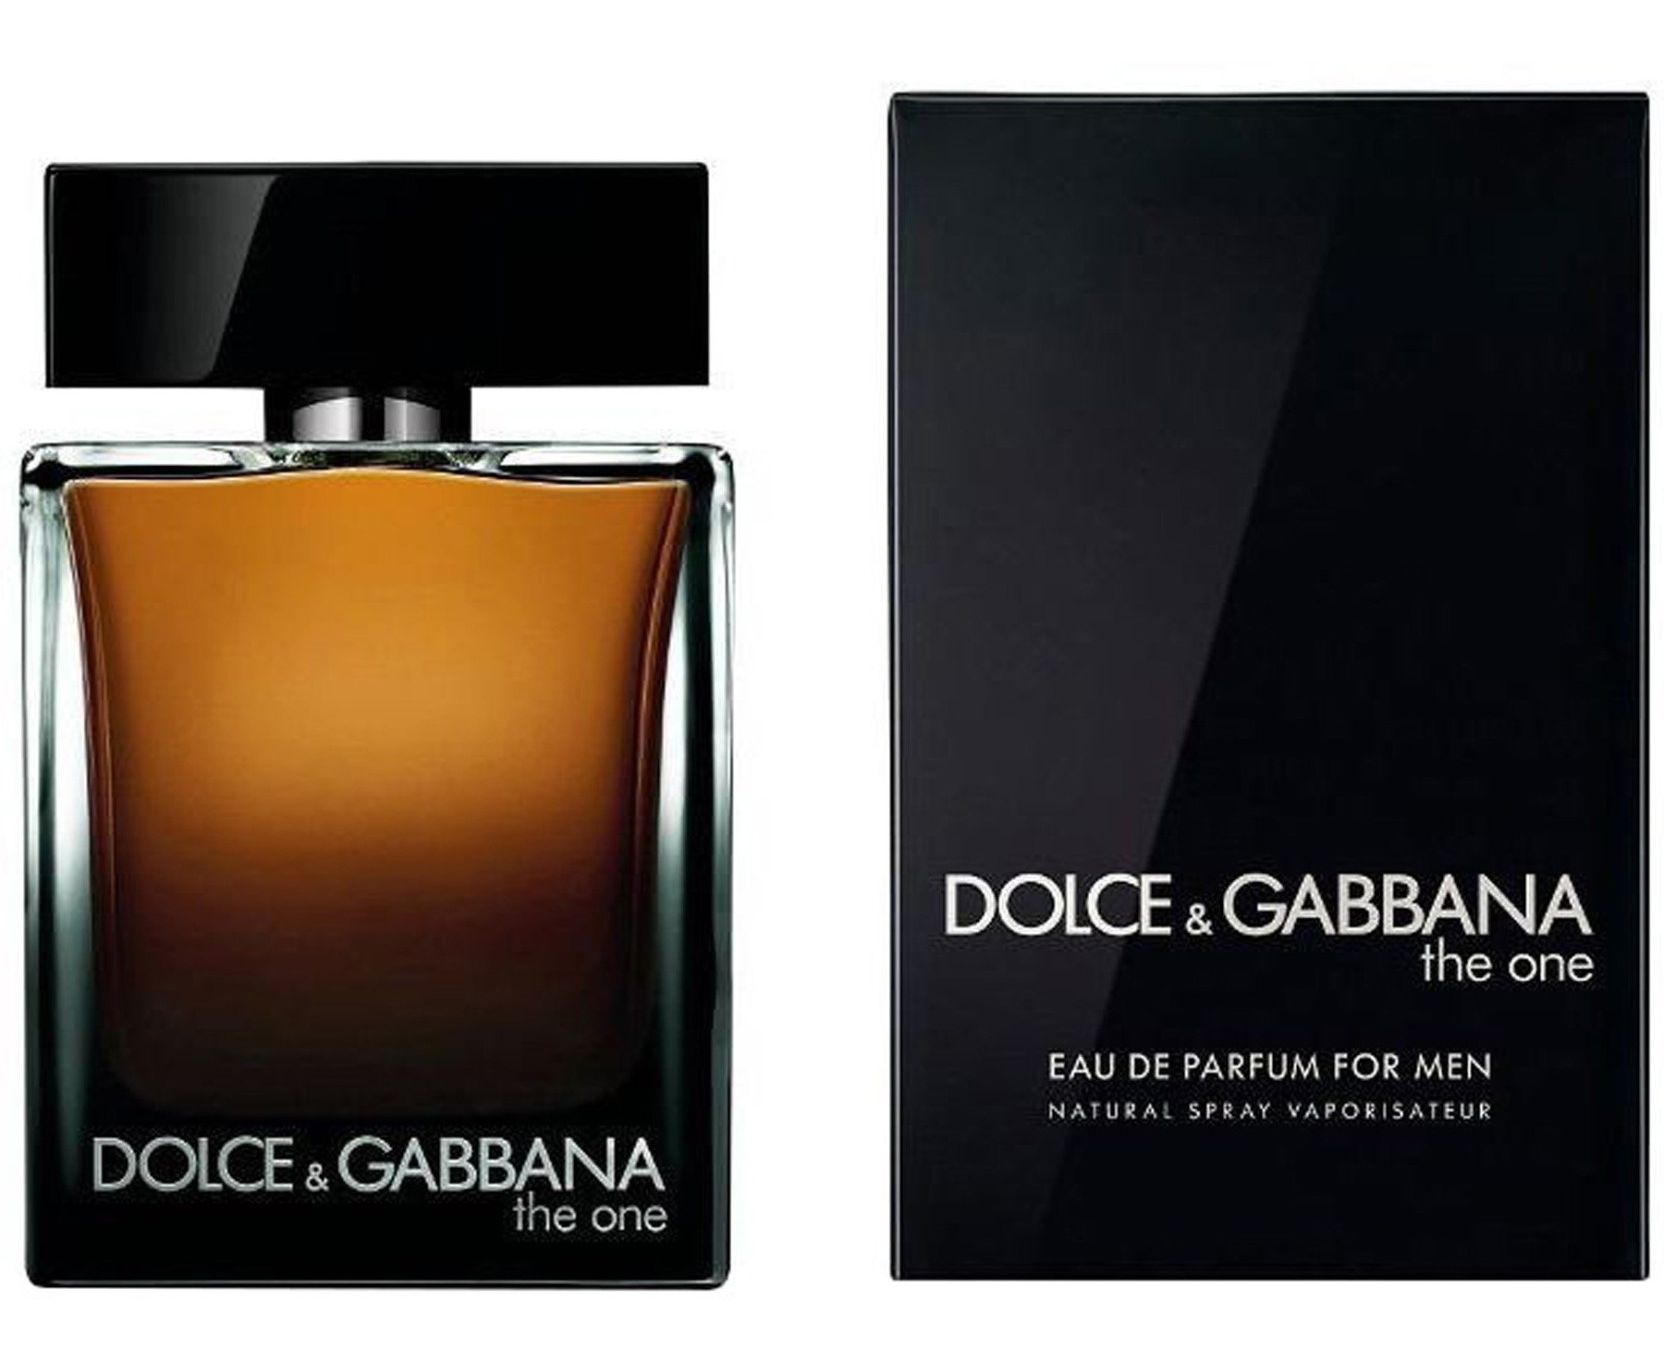 Дольче габбана для мужчин. Dolce Gabbana the one for men 100ml. Dolce Gabbana the one EDP 100ml. Dolce & Gabbana the one for men, EDP., 100 ml. Dolce & Gabbana the one men 100ml EDP.